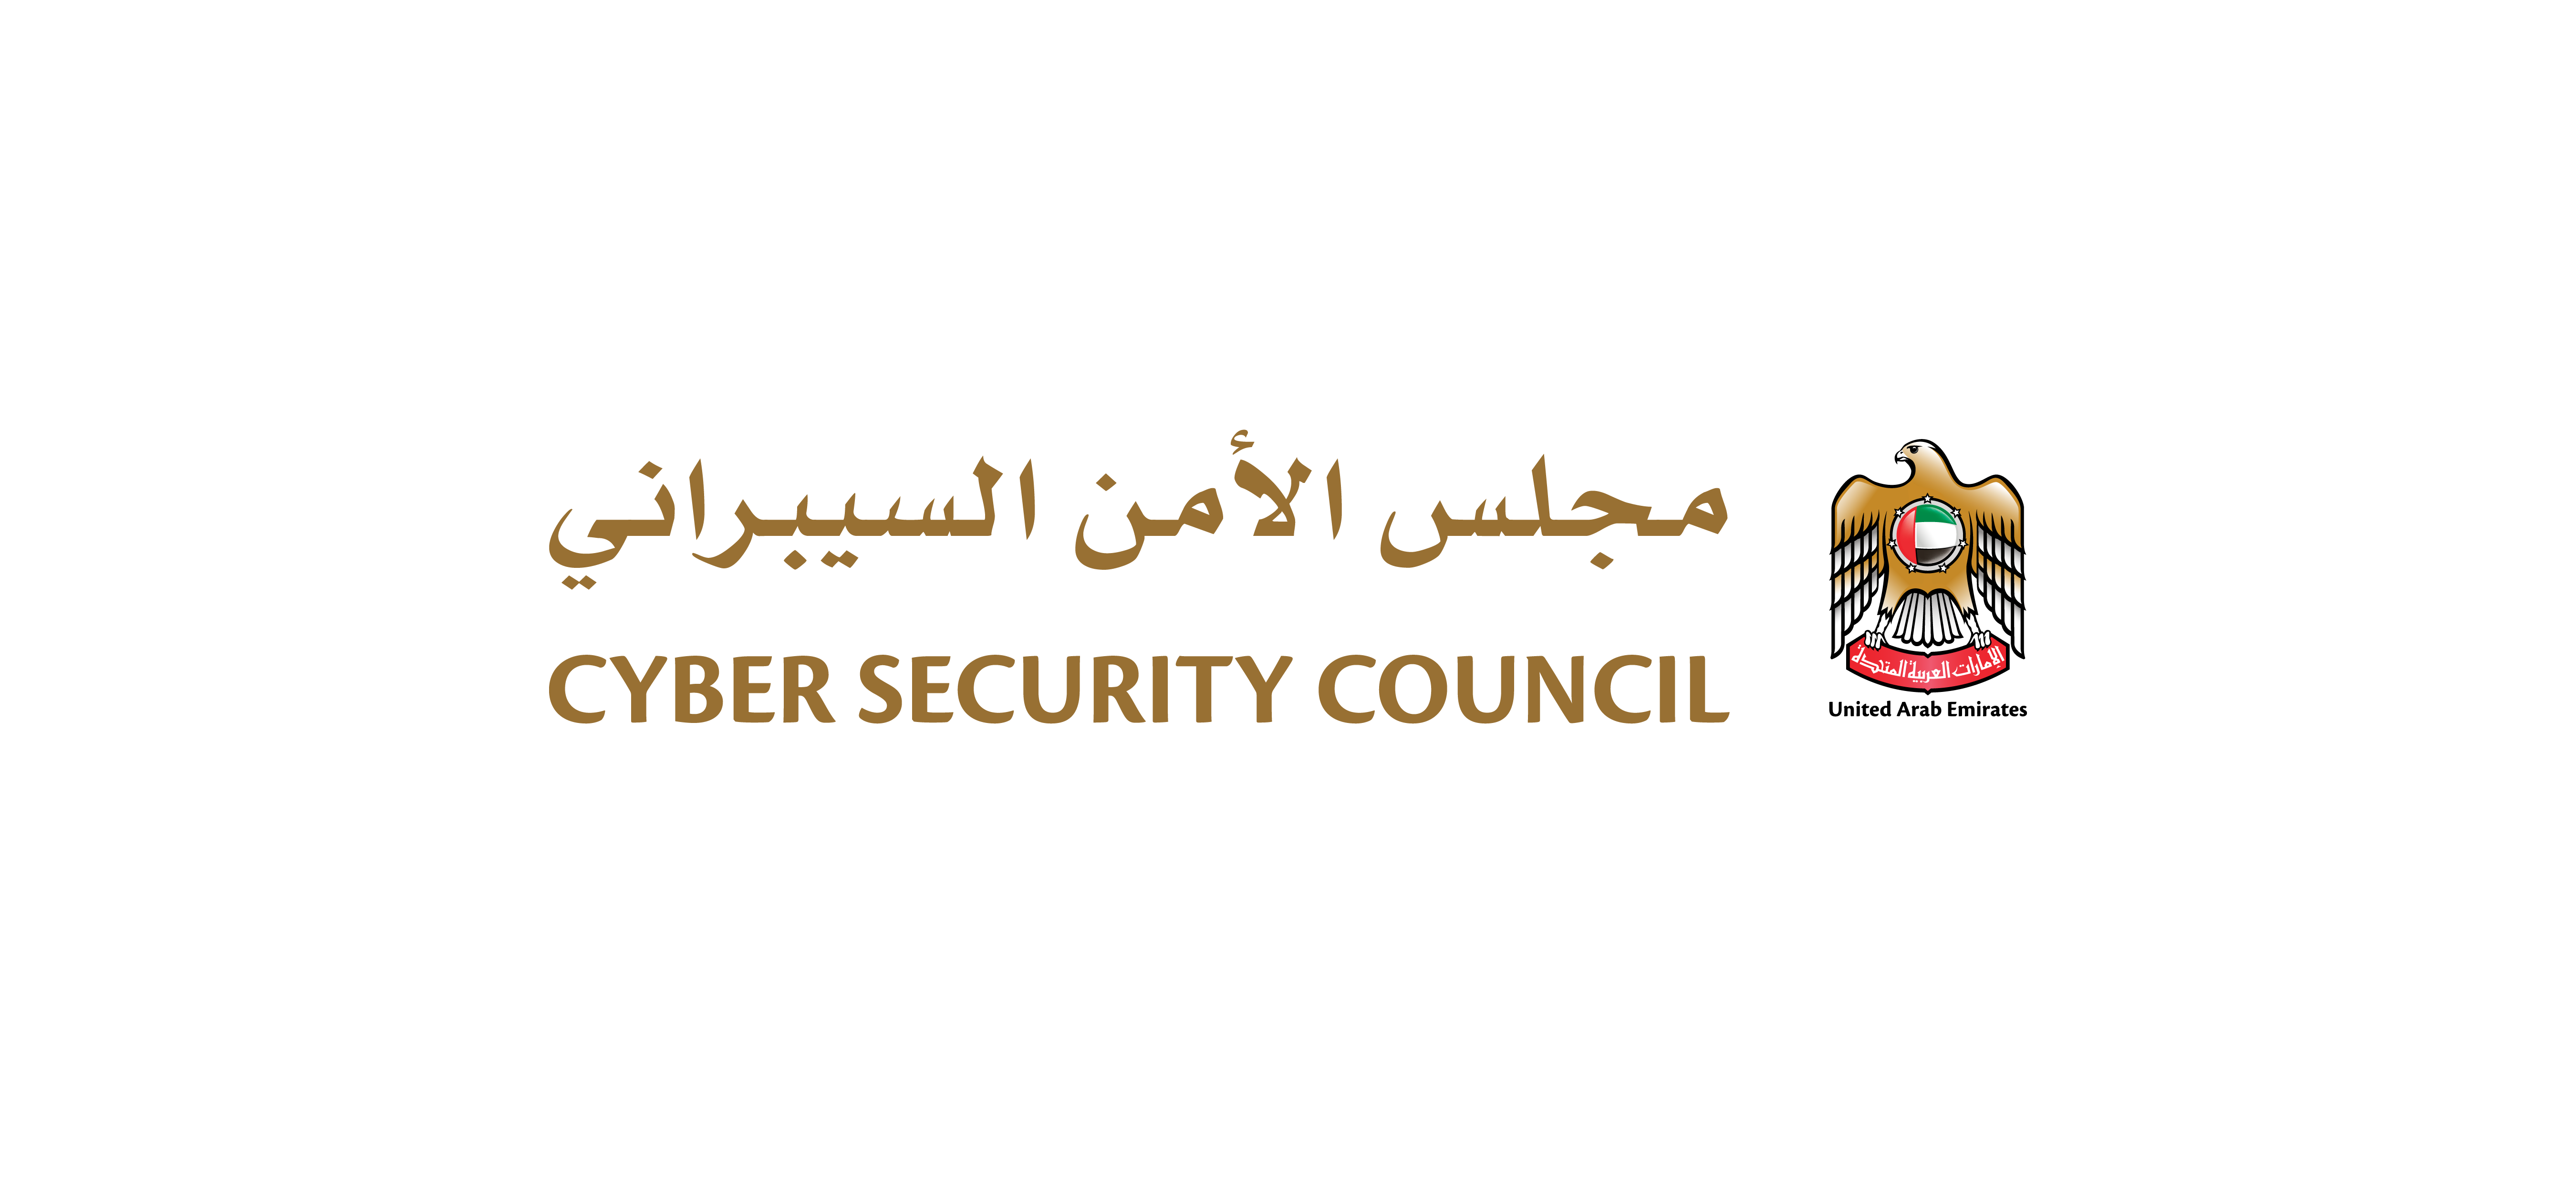 مجلس الأمن السيبراني بالامارات يقود مبادرات نوعية لتعزيز الحماية الرقمية